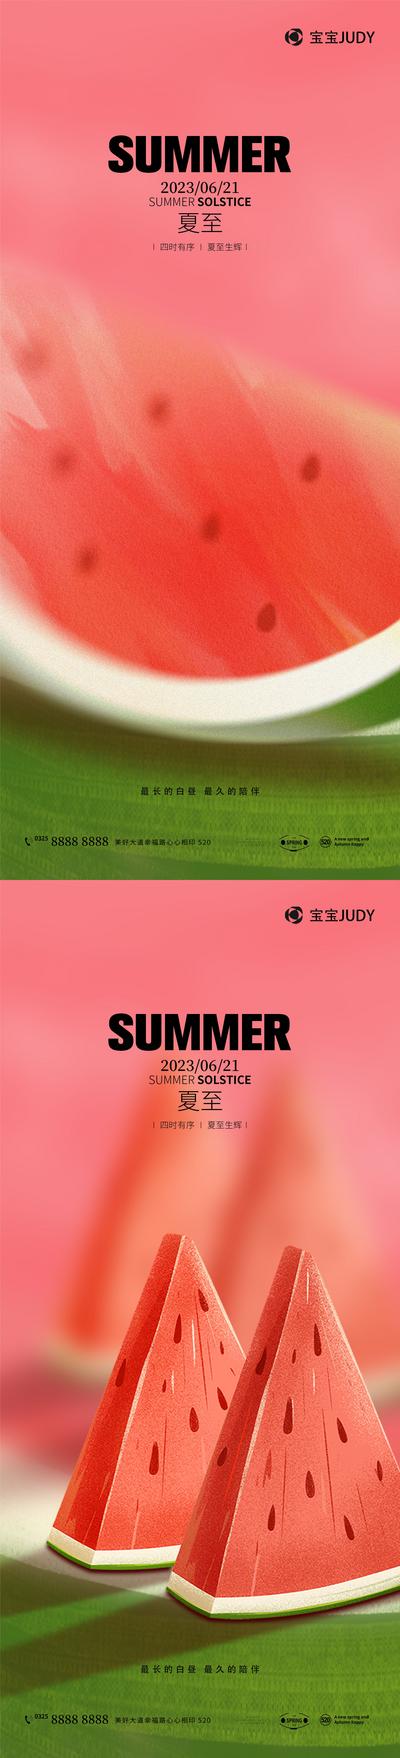 南门网 海报 地产 创意 夏至 夏天 清凉 冰爽 冰凉 西瓜 简约 清新 水果 立夏 合成